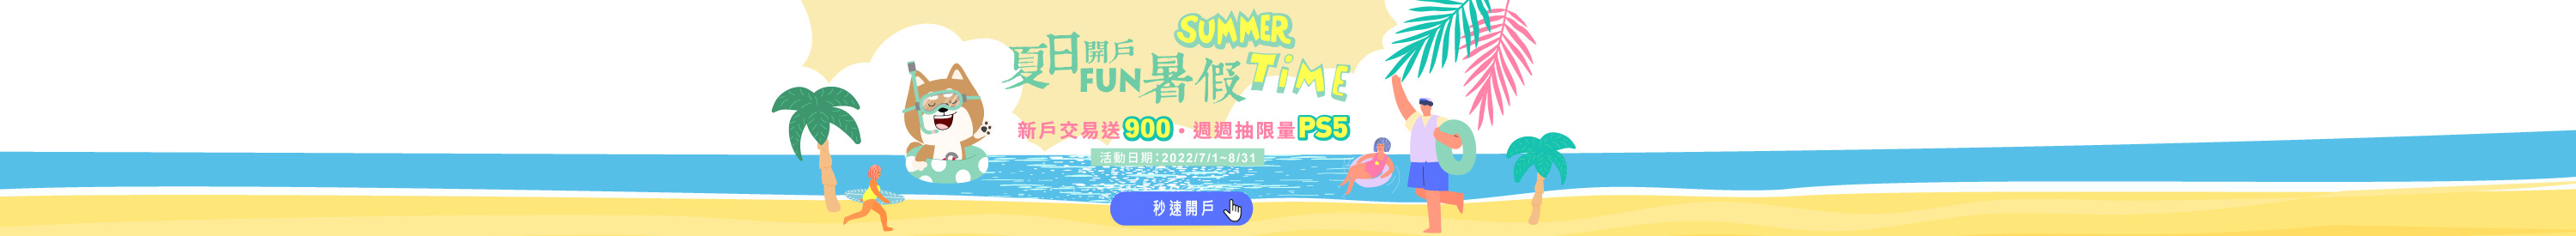 國票夏日開戶FUN暑假｜新戶交易送900周周抽限量PS5